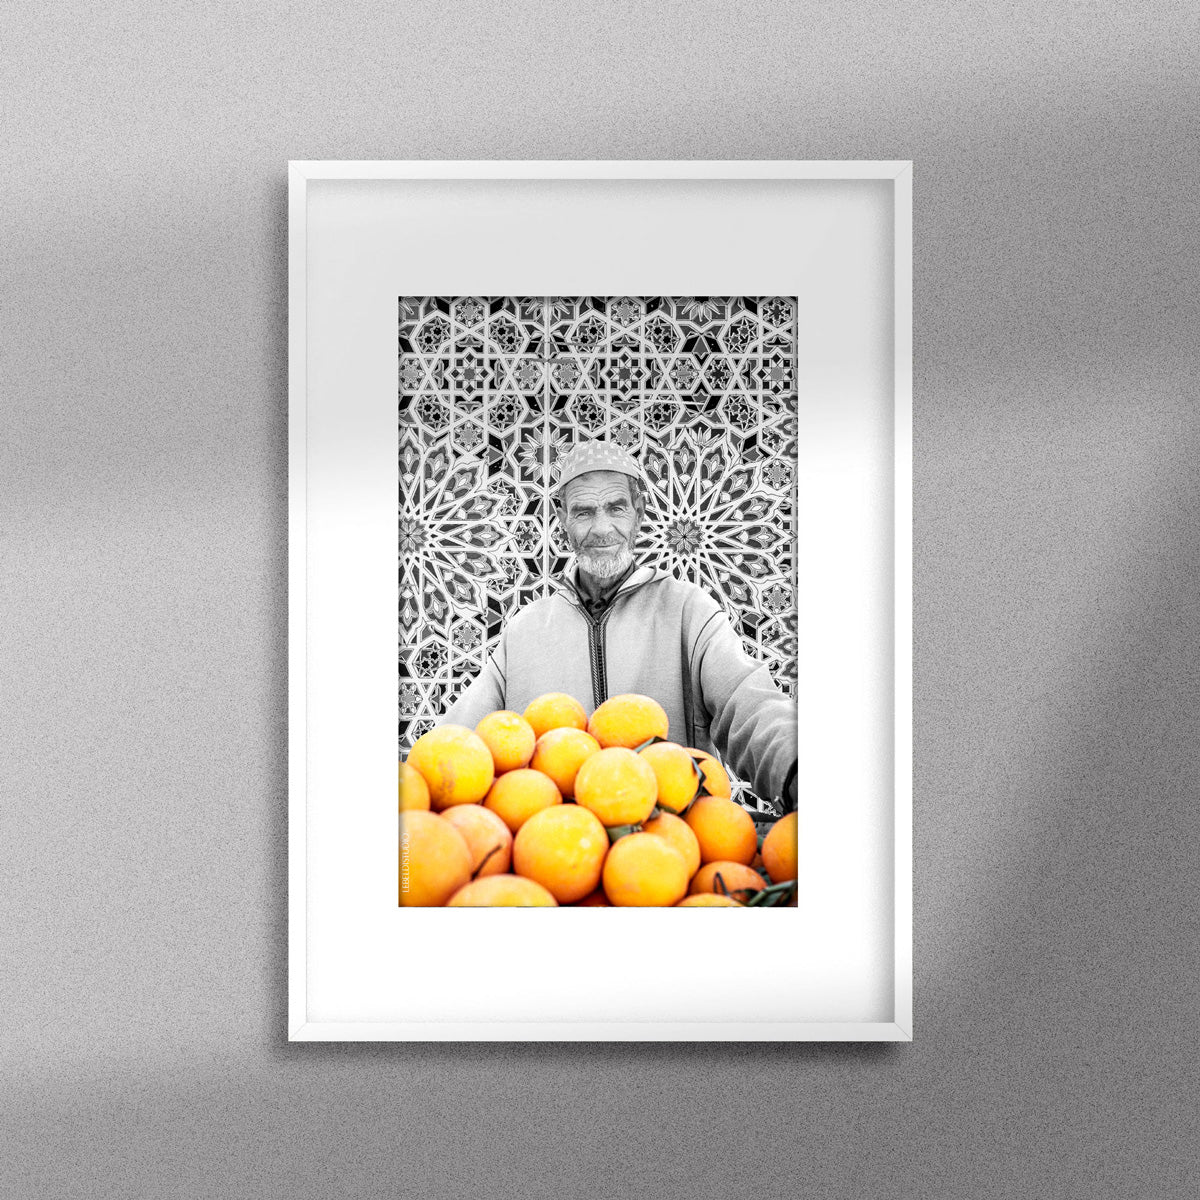 Tableau décoratif en noir et blanc d'un vieux marchand d'oranges très souriant, encadré dans un cadre blanc - Format A3.